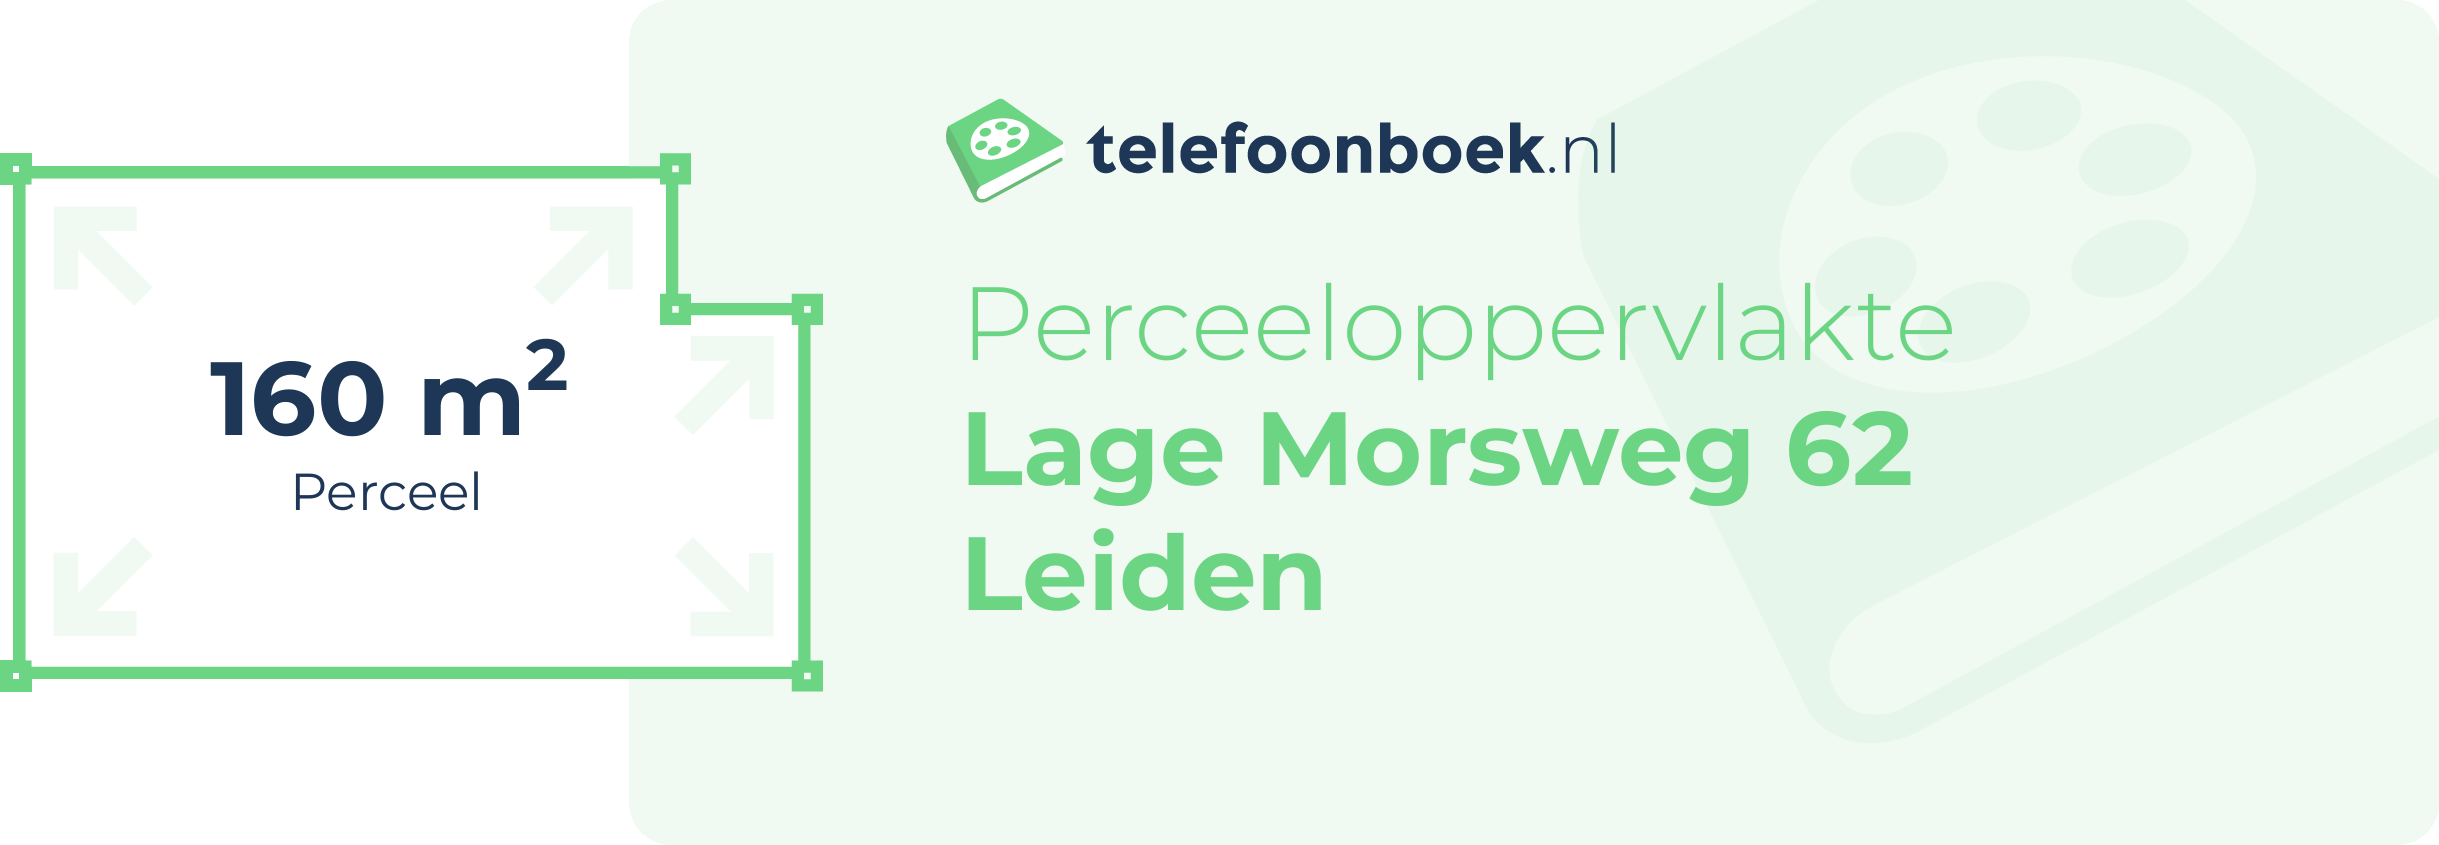 Perceeloppervlakte Lage Morsweg 62 Leiden